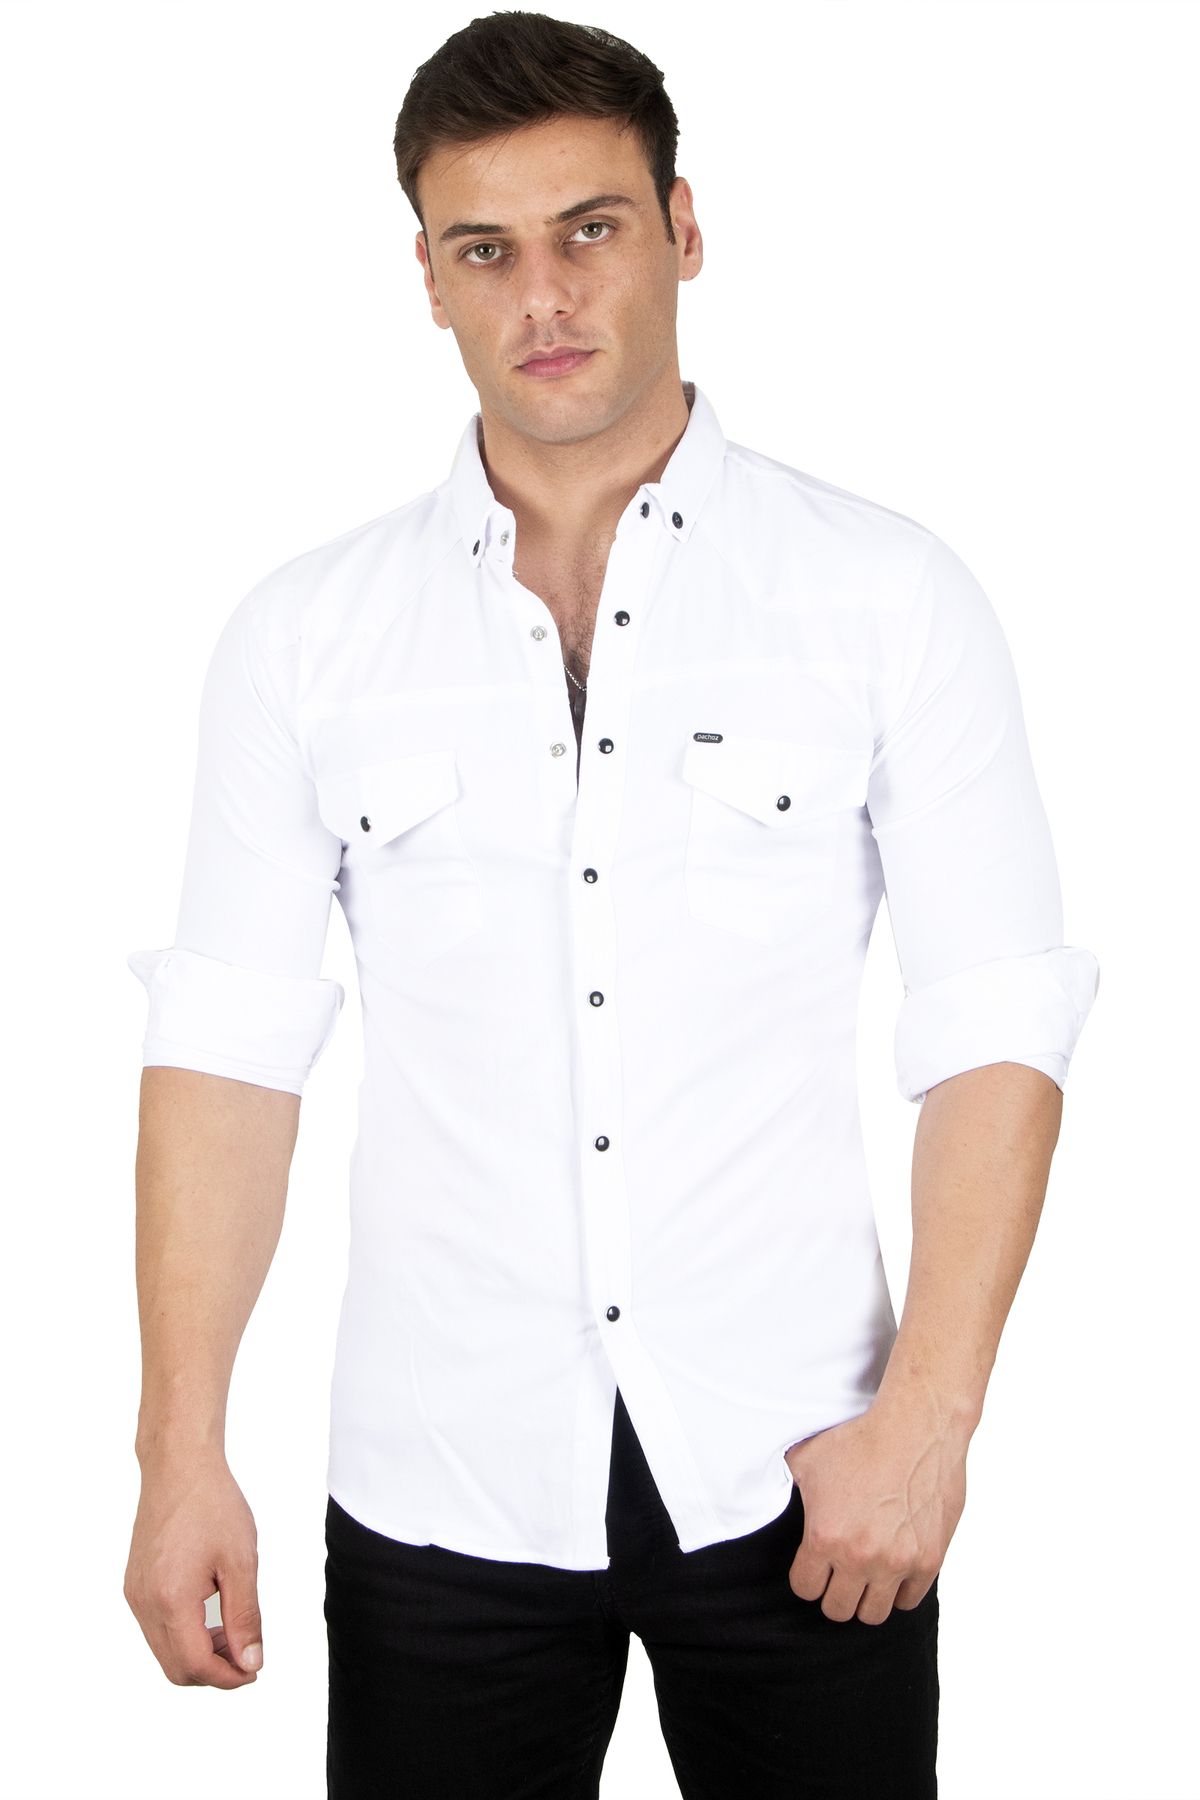 DeepSea Erkek Beyaz Likralı Çıtçıtlı Çift Cepli Dikiş Detaylı Kot Gömlek 2300419